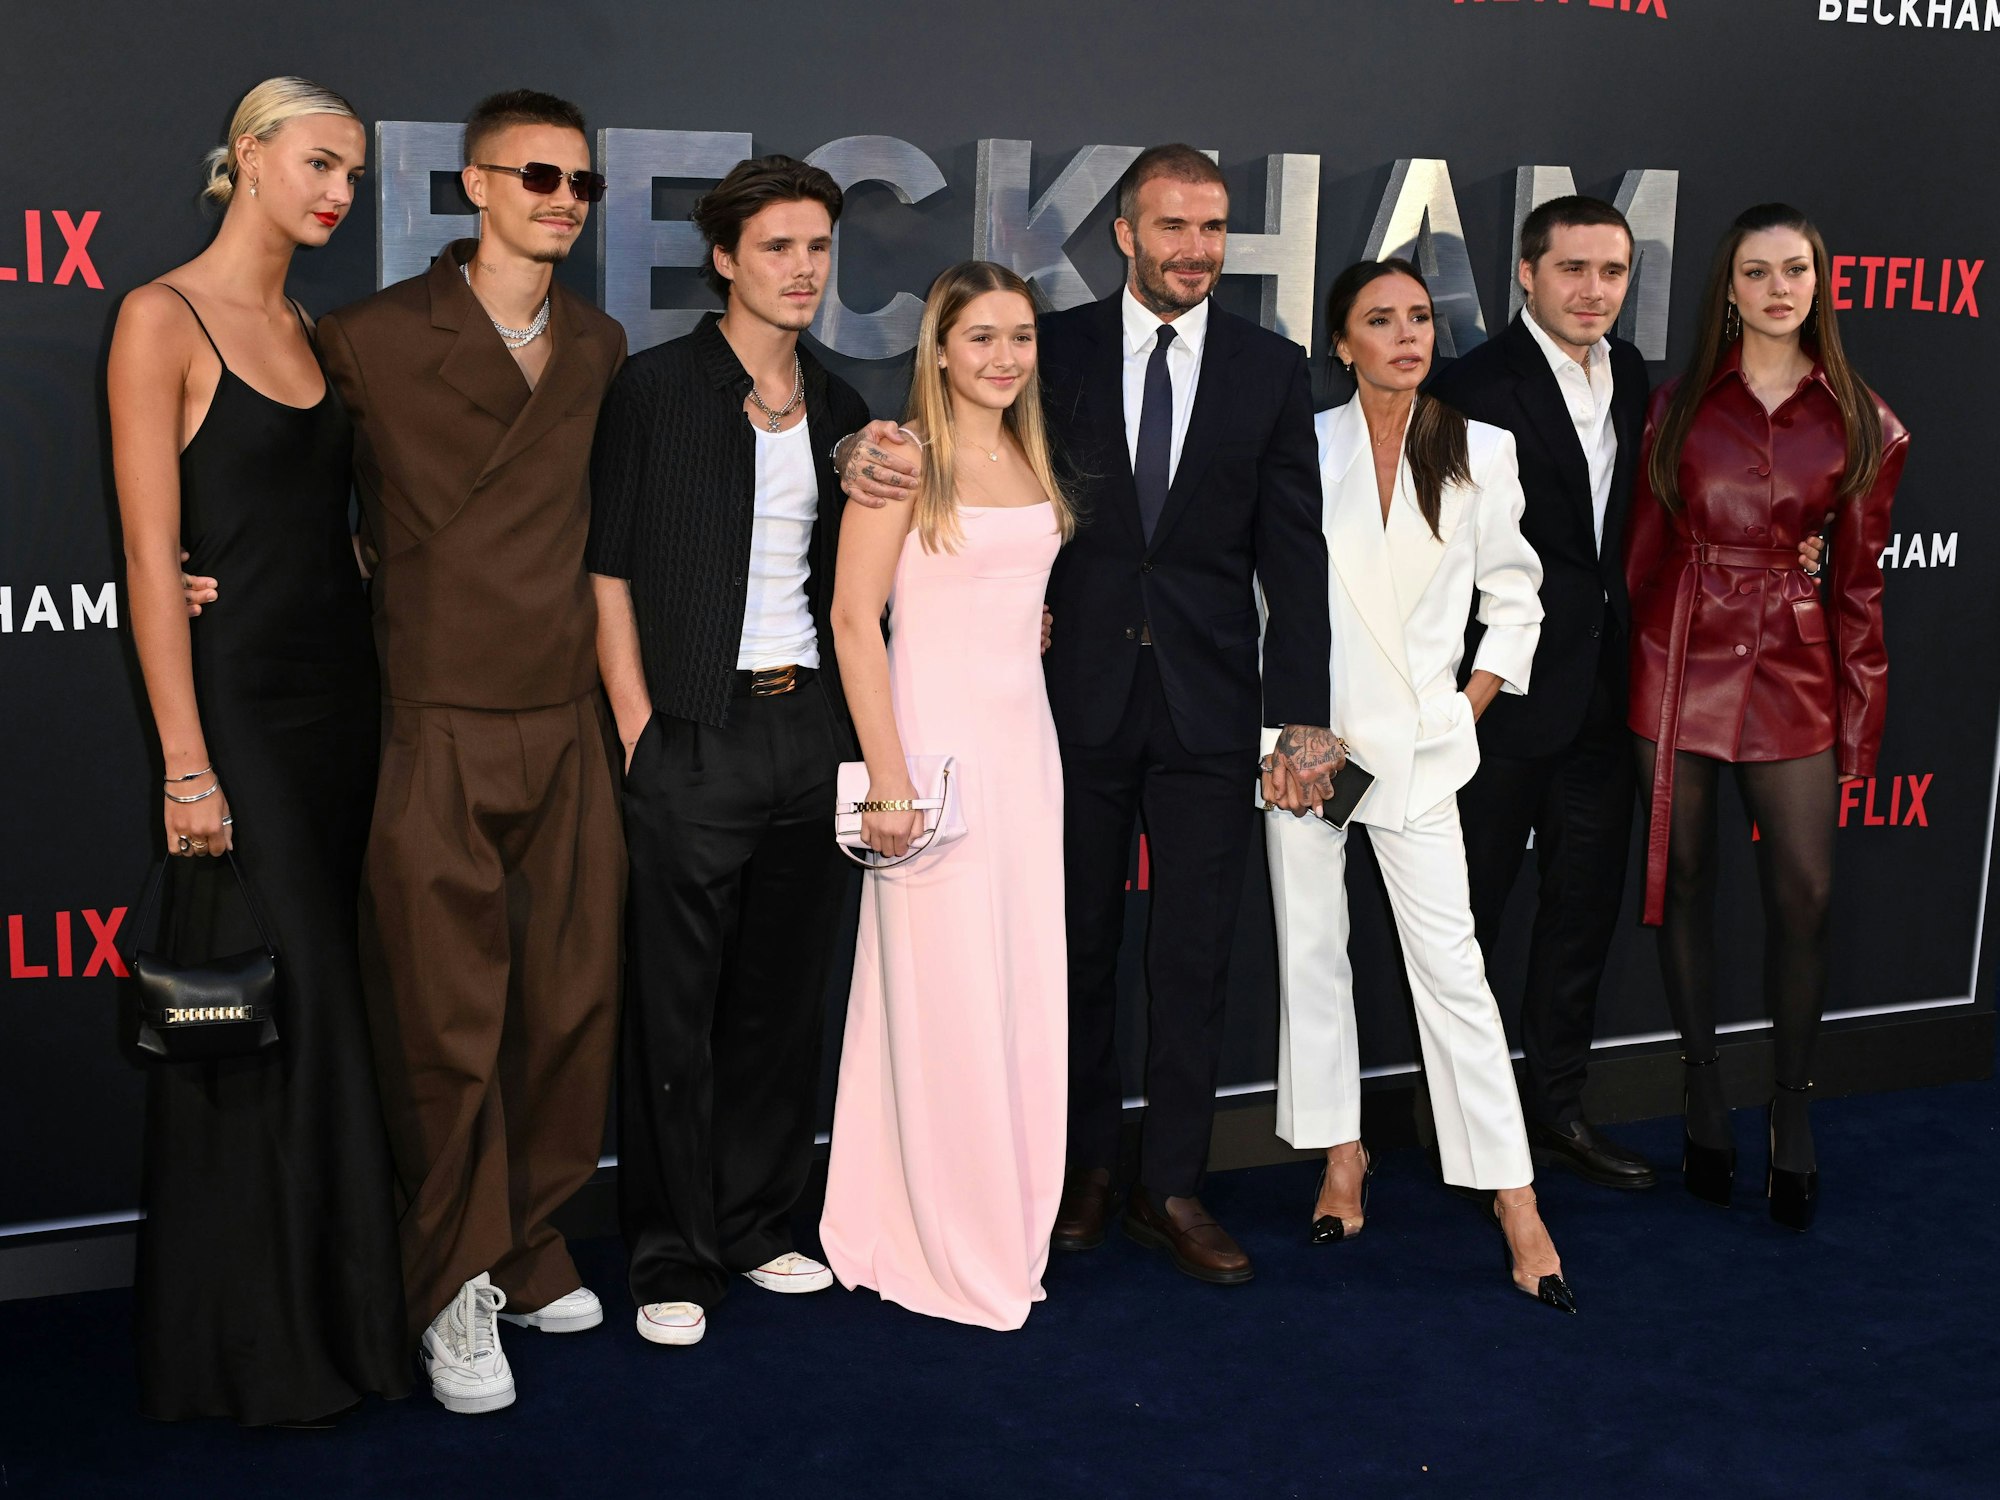 Mia Regan, Romeo Beckham, Cruz Beckham, Harper Beckham, David Beckham, Victoria Beckham, Brooklyn Beckham und Nicola Peltz bei der Premiere ihrer Serie in London.